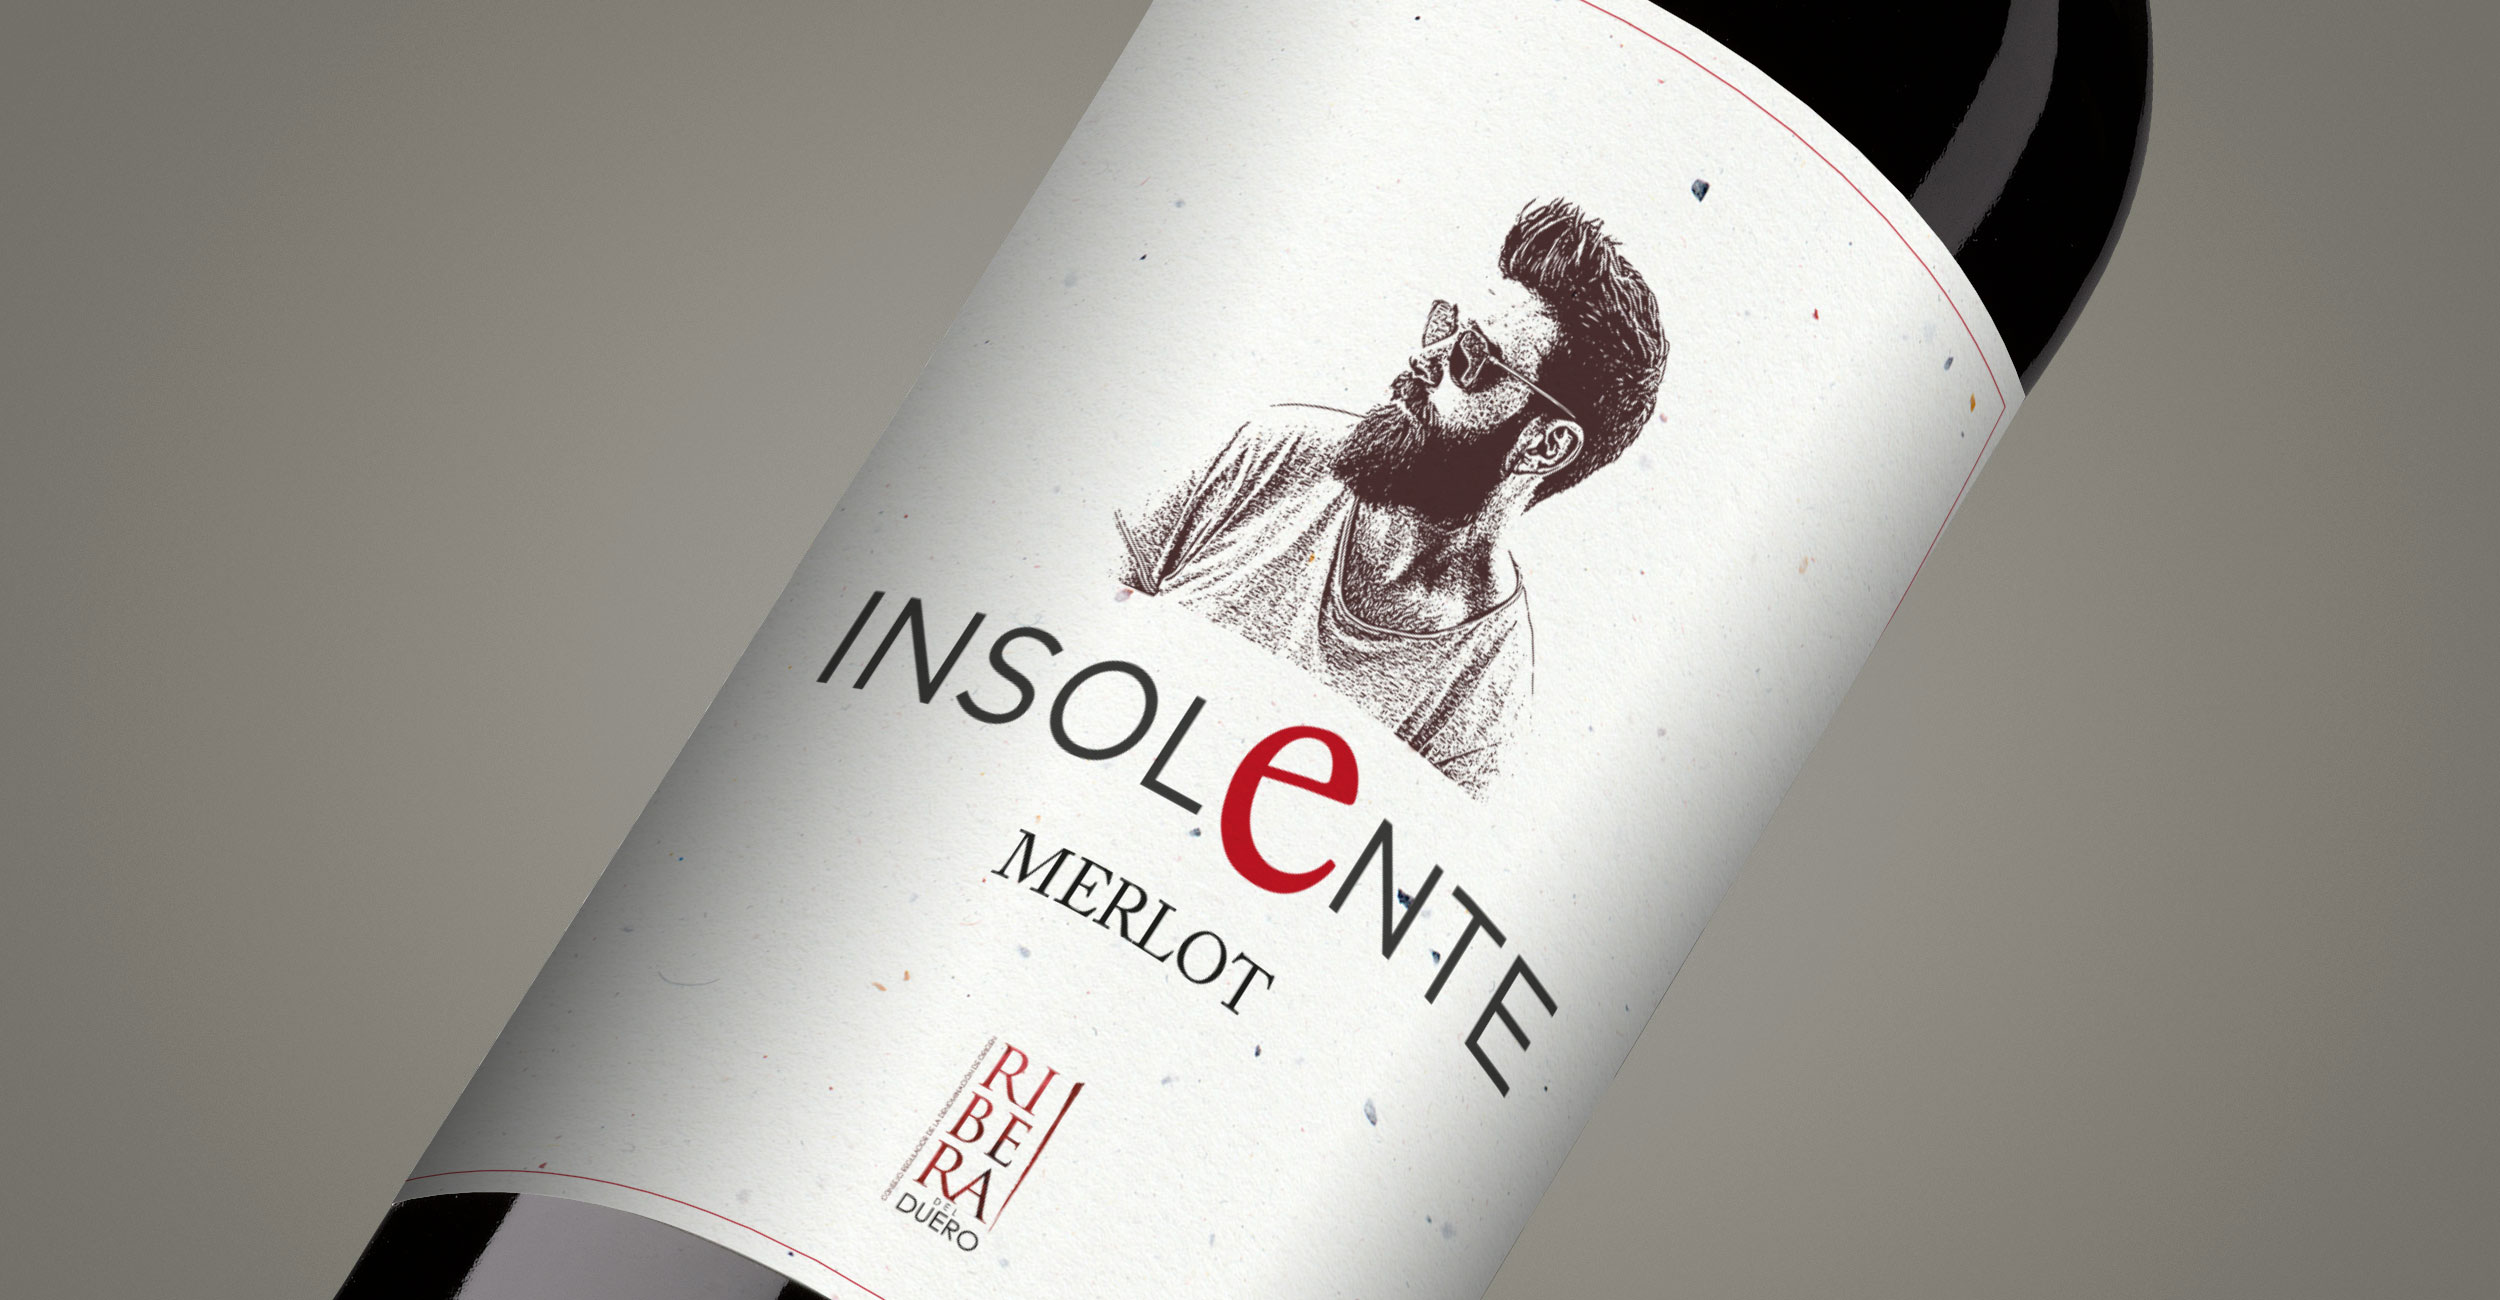 Diseño gráfico y creativo de etiquetas de vino tinto joven y packaging de vino para INSOLENTE